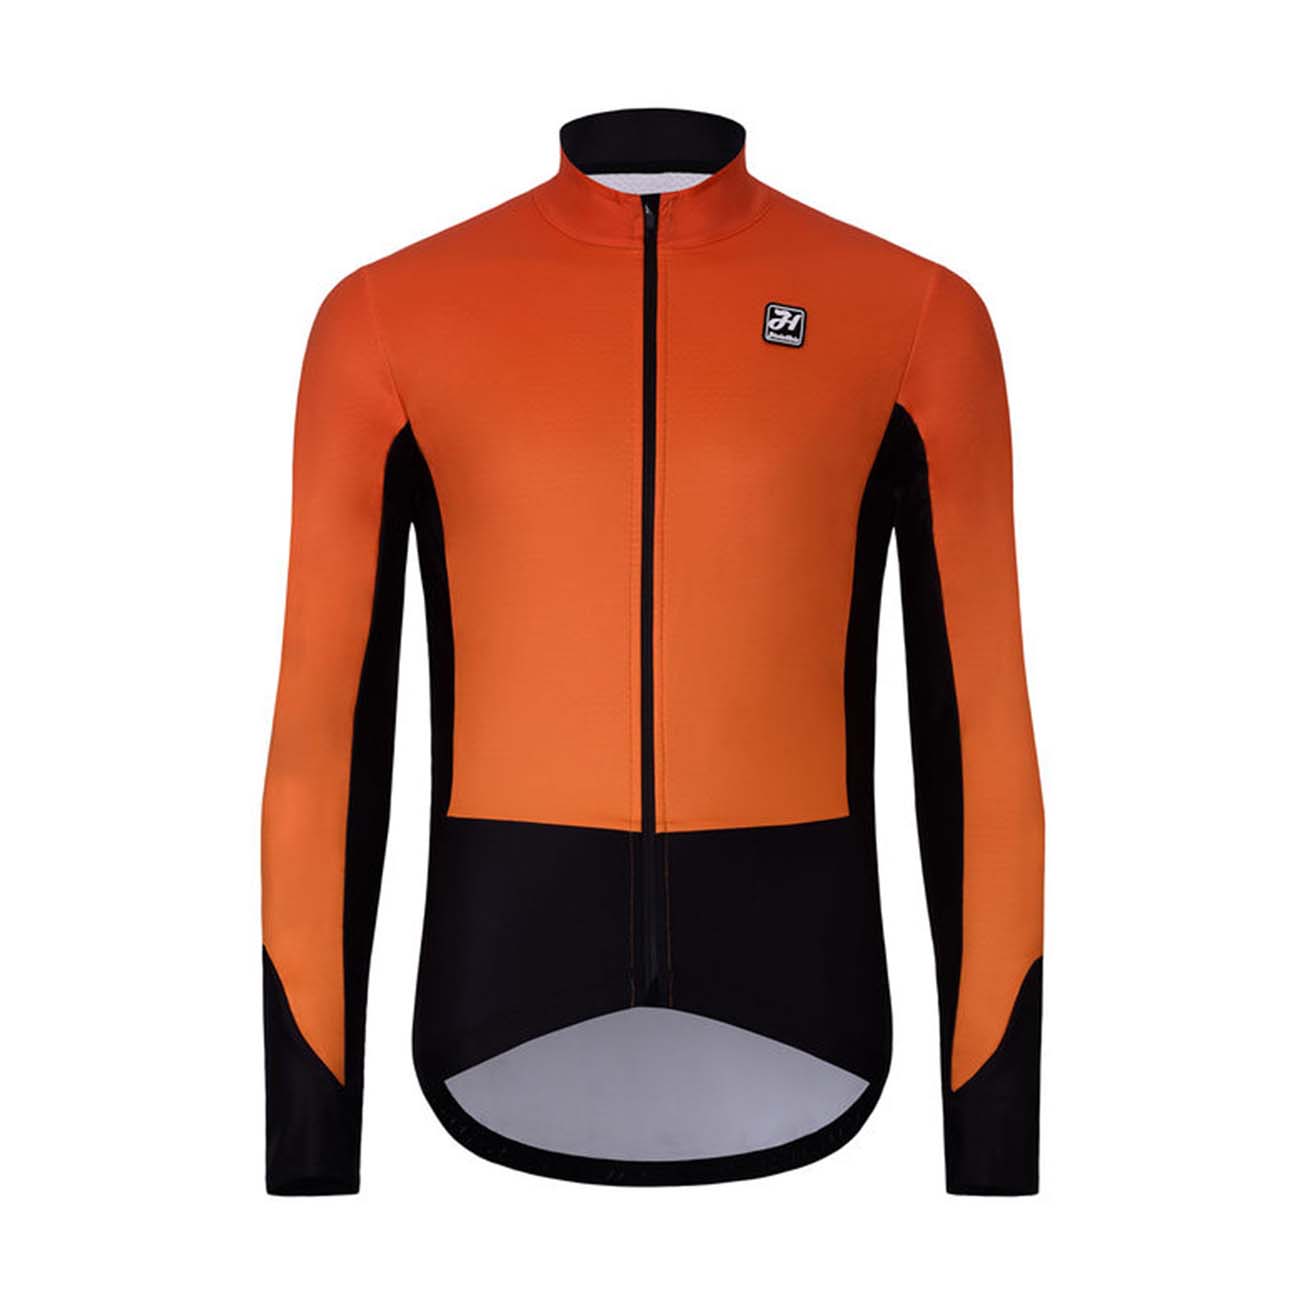 HOLOKOLO Kerékpáros Téli Kabát és Nadrág - CLASSIC - Narancssárga/fekete